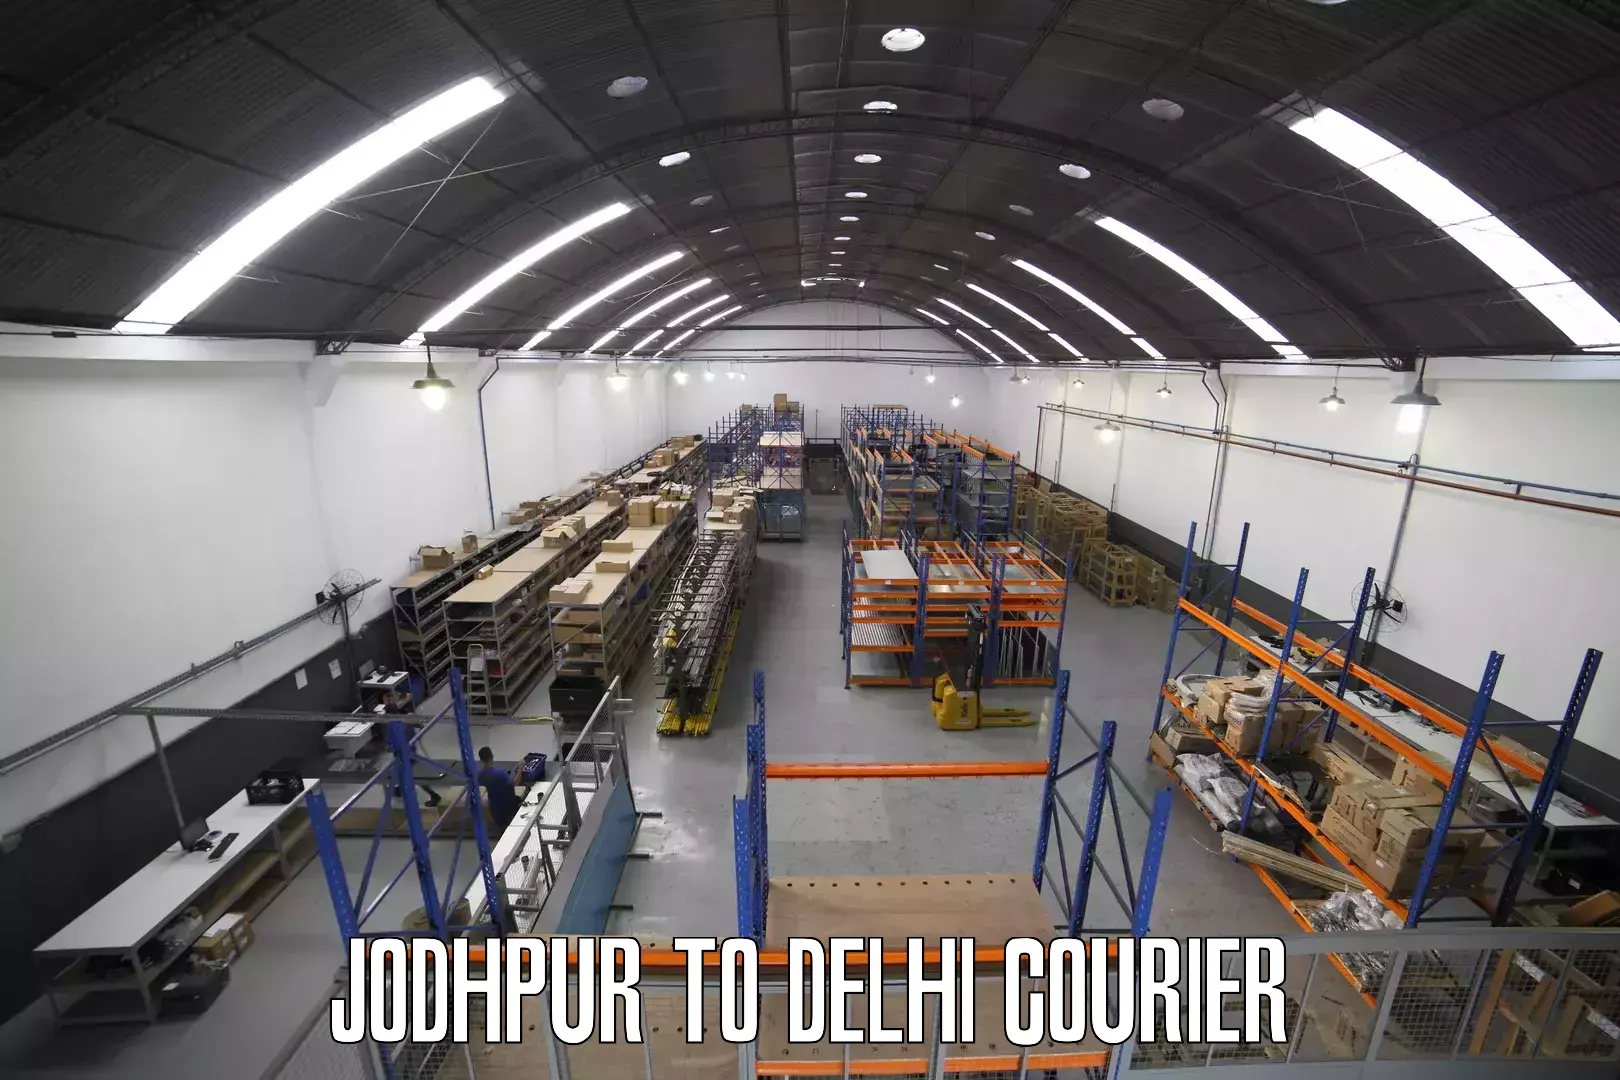 Multi-city courier Jodhpur to Burari